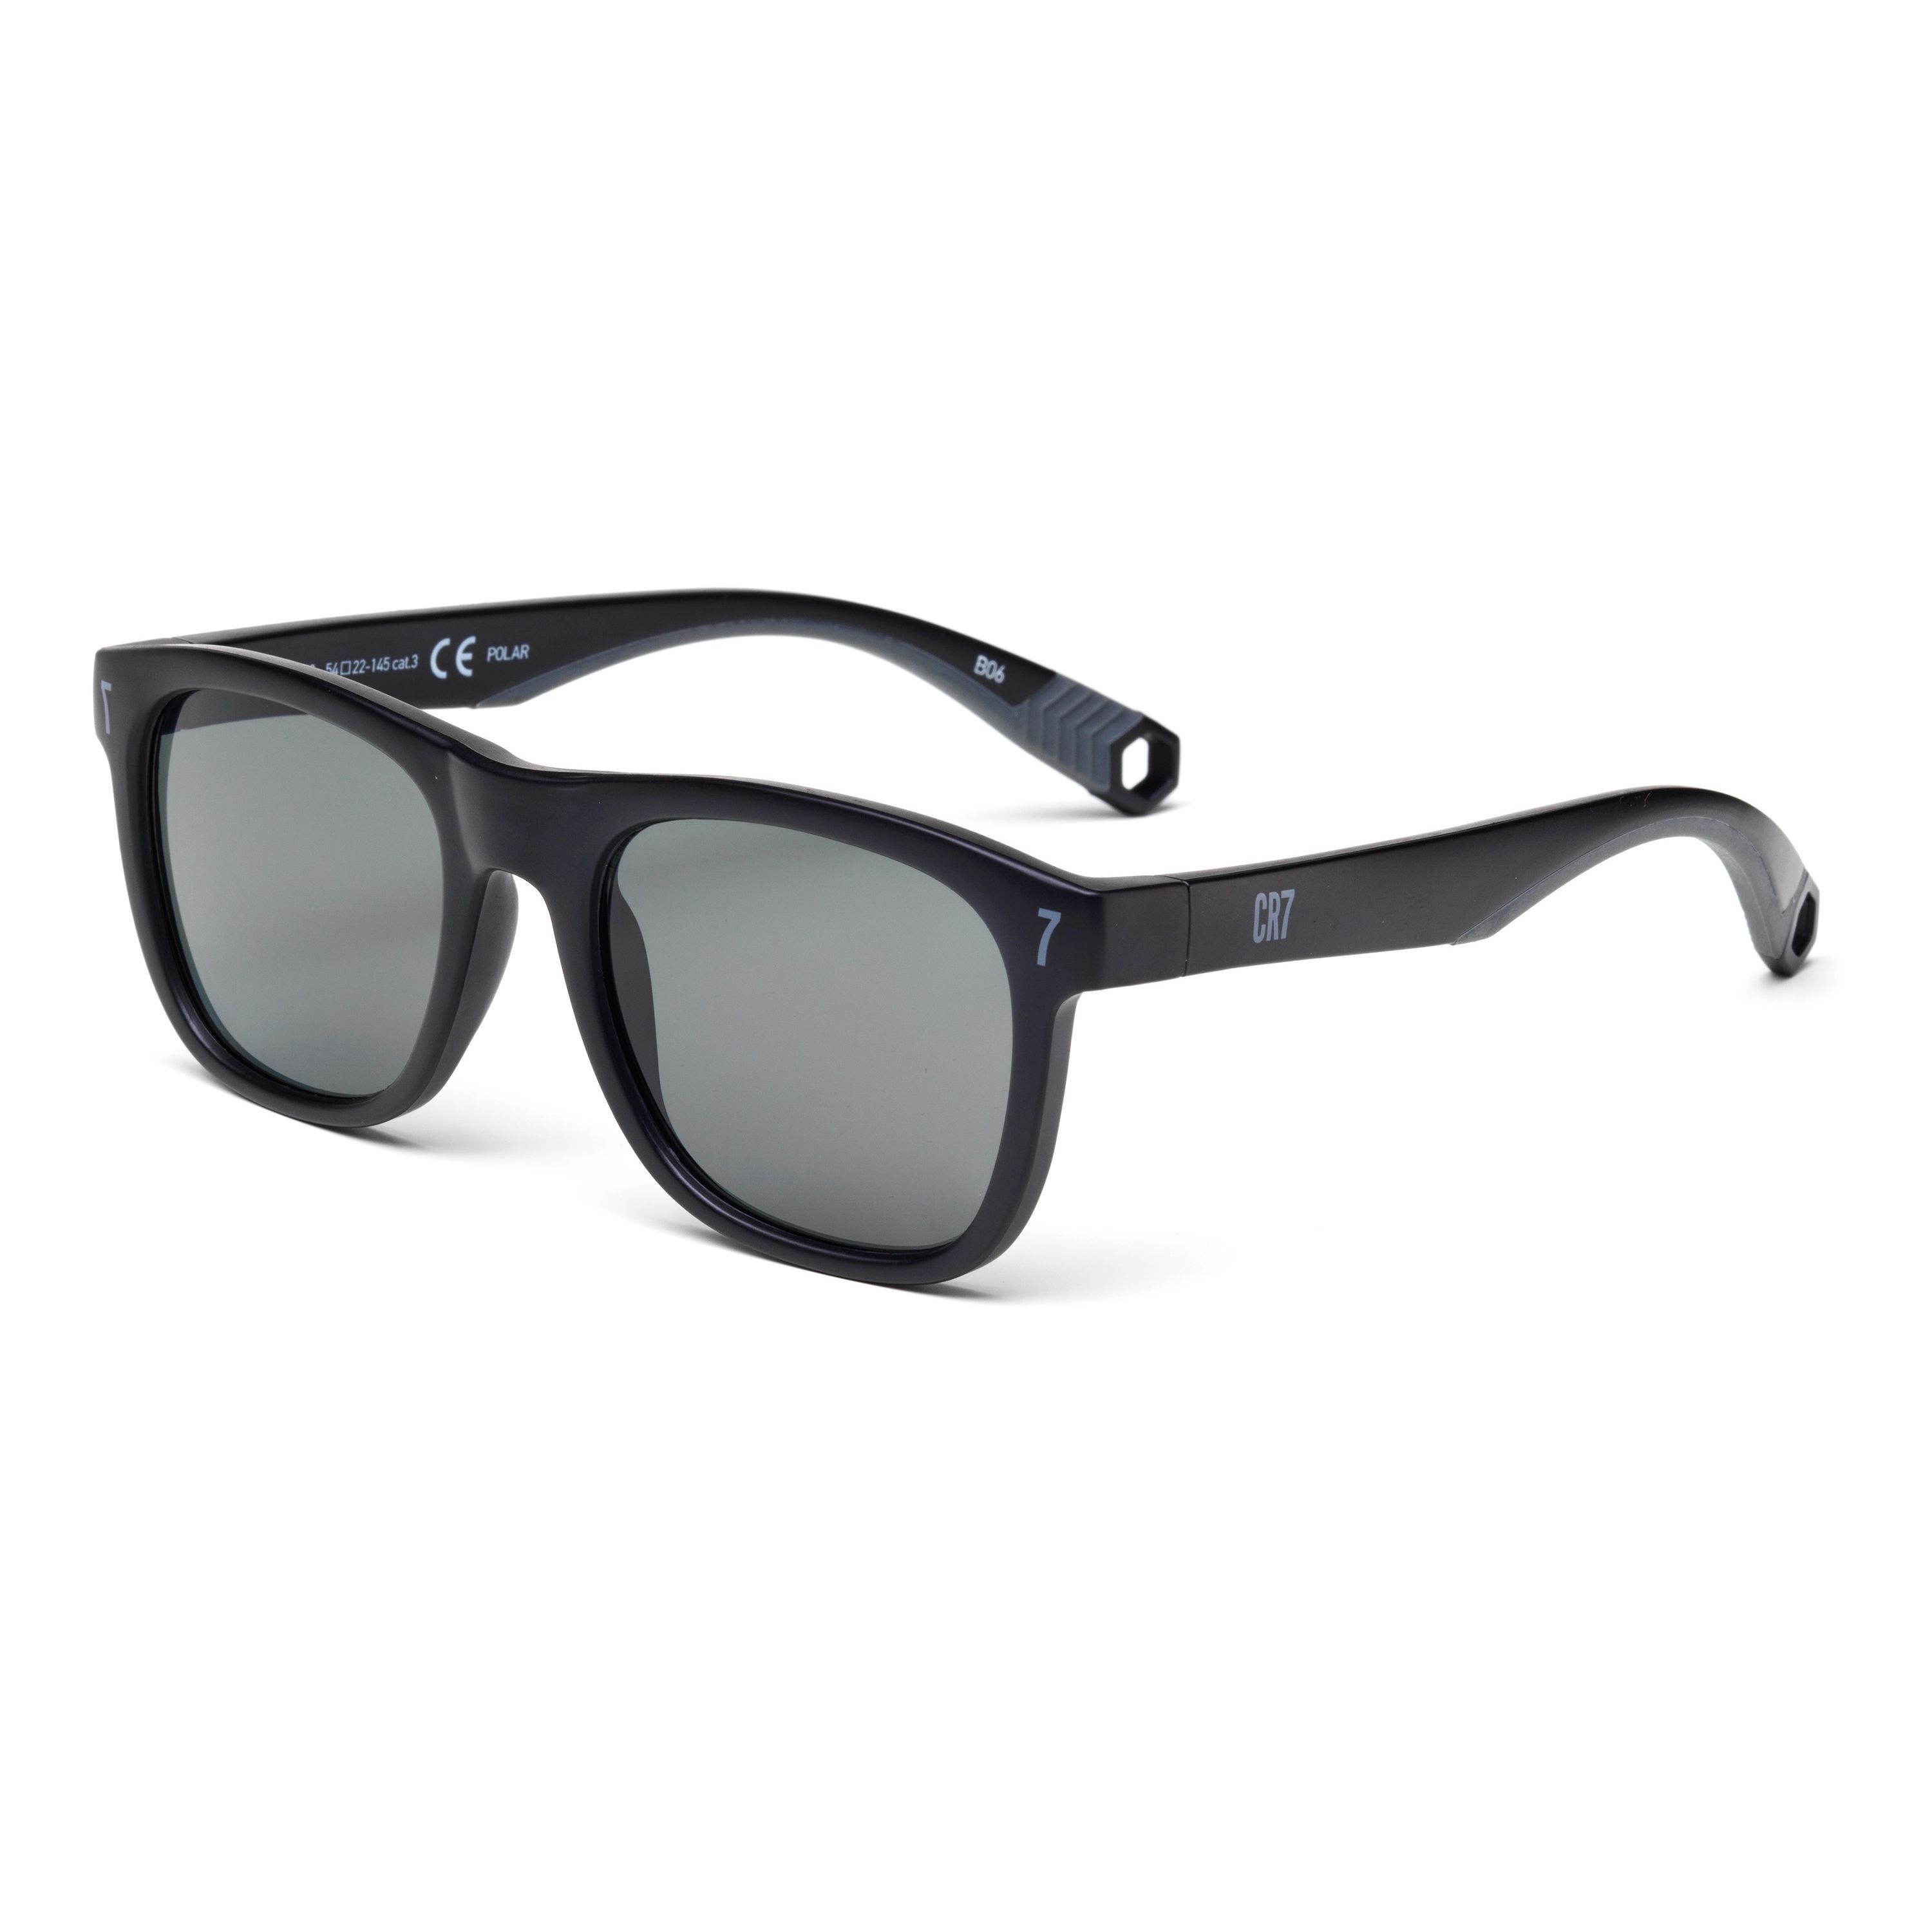 CR7002S Square Sunglasses 9.072 - size 54